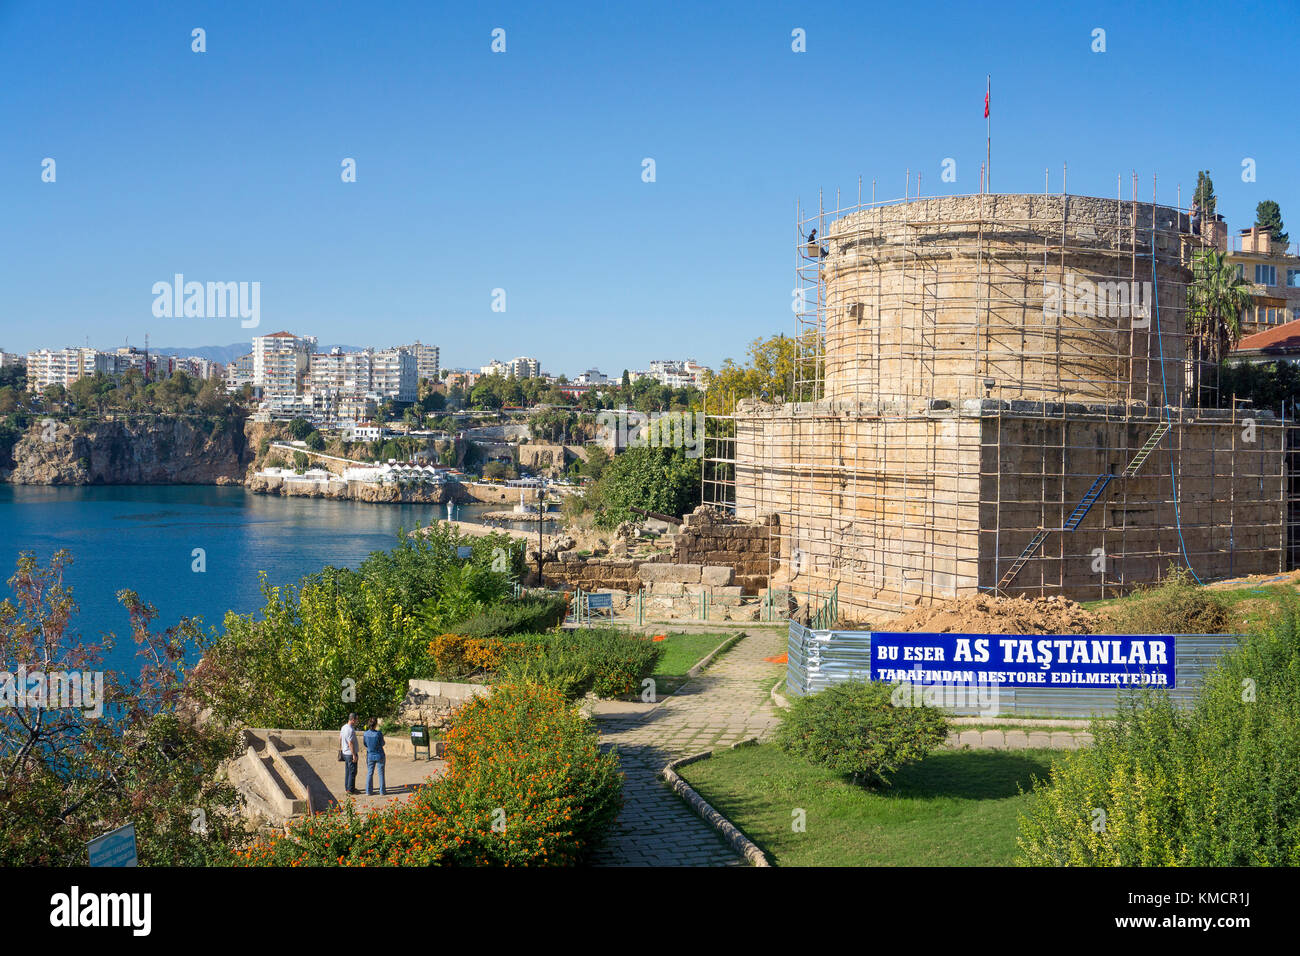 Hidirlik Tower at Karaalioglu Park, old town Kaleici, Antalya, turkish riviera, Turkey Stock Photo